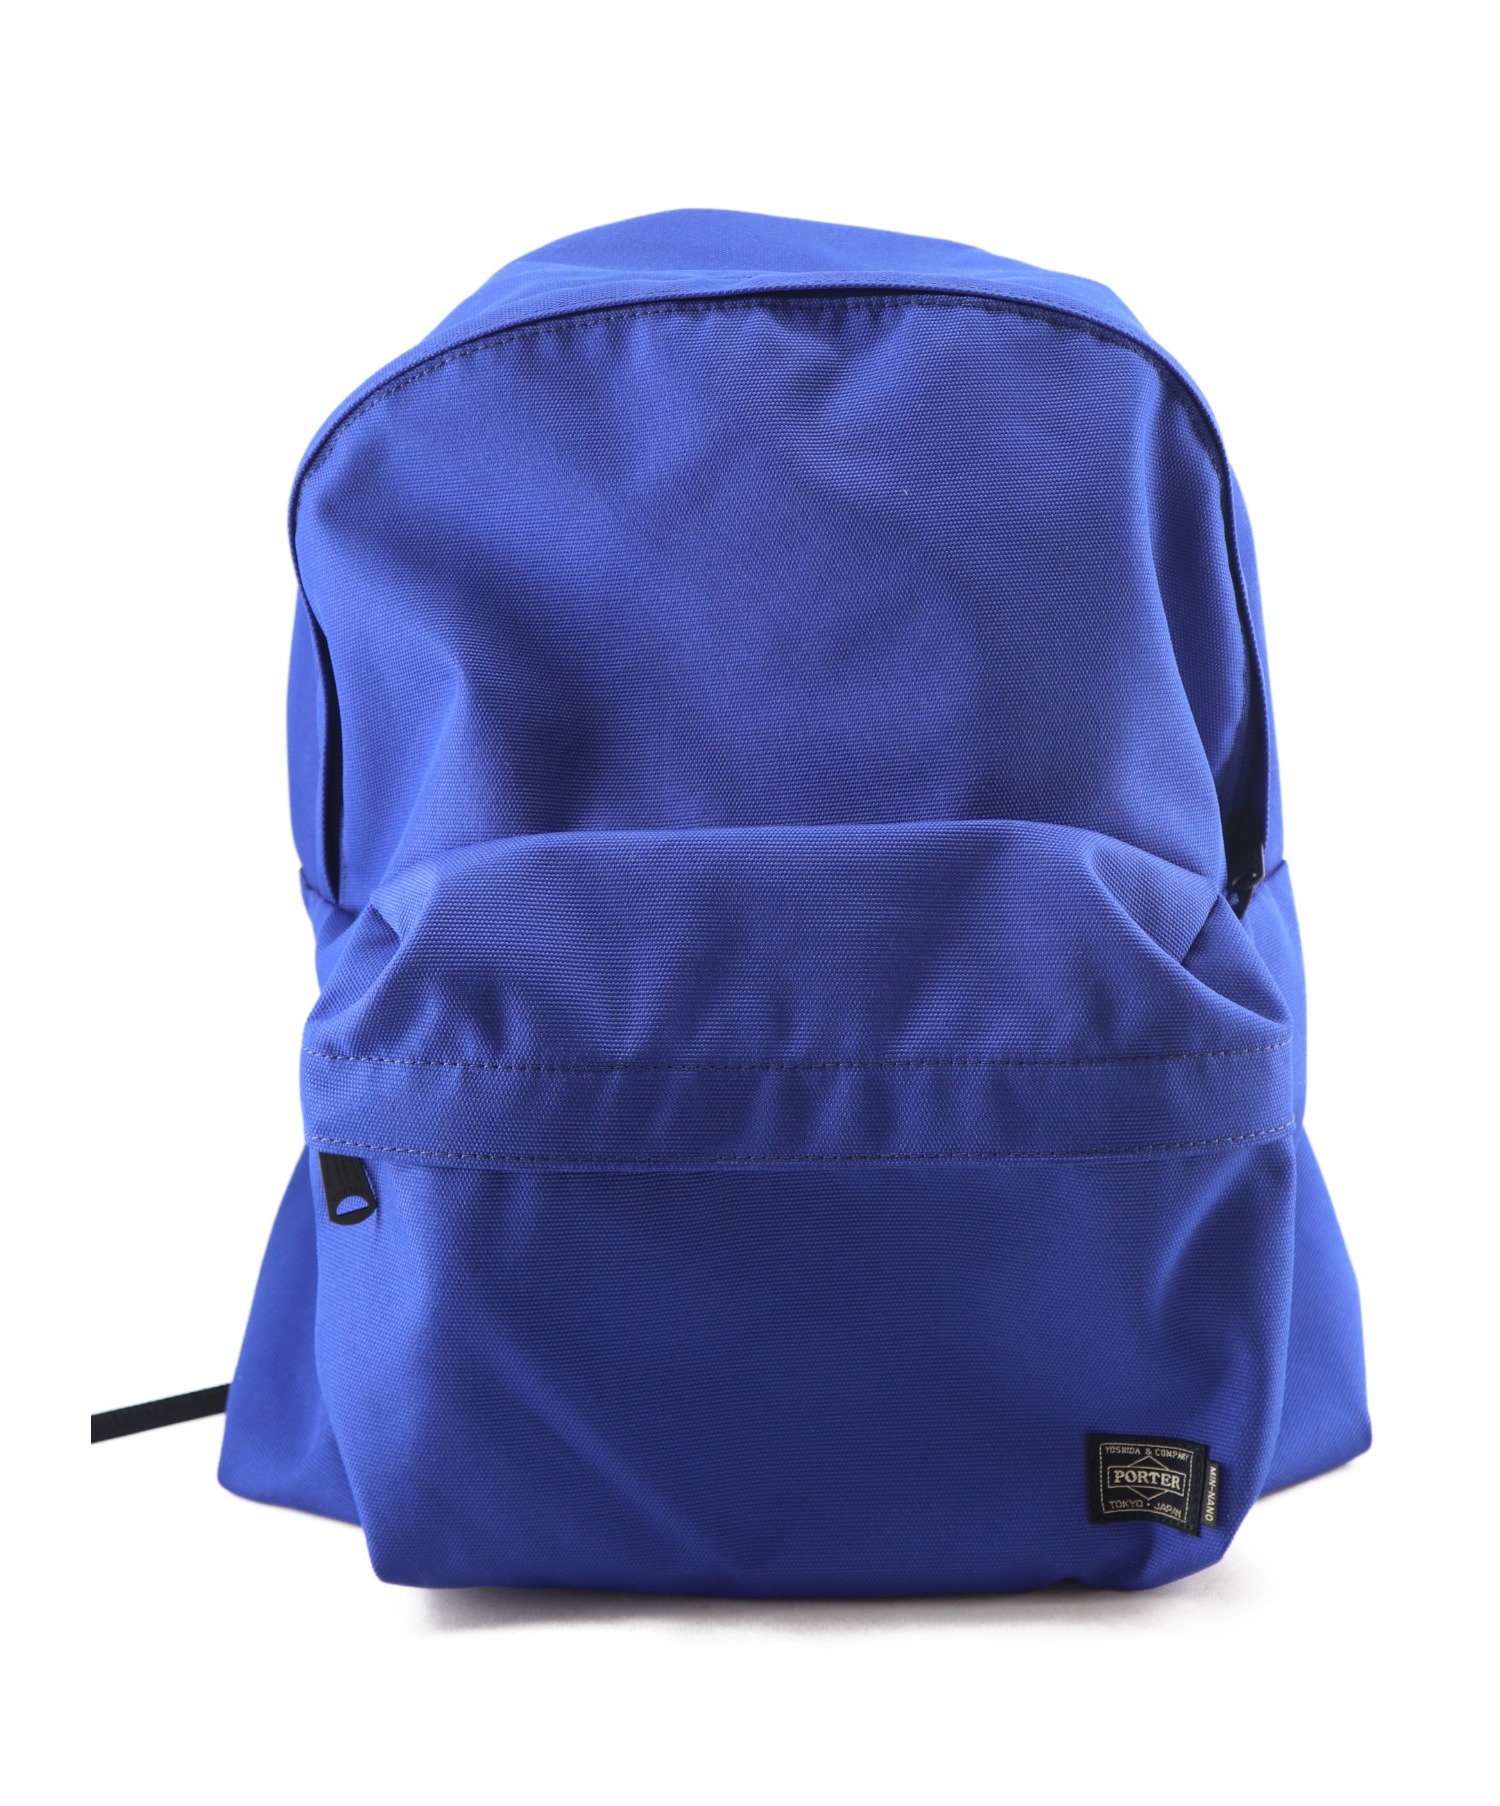 一部予約販売中】 ネイビー Backpack MIN-NANO×PORTER - リュック/バックパック - www.indiashopps.com